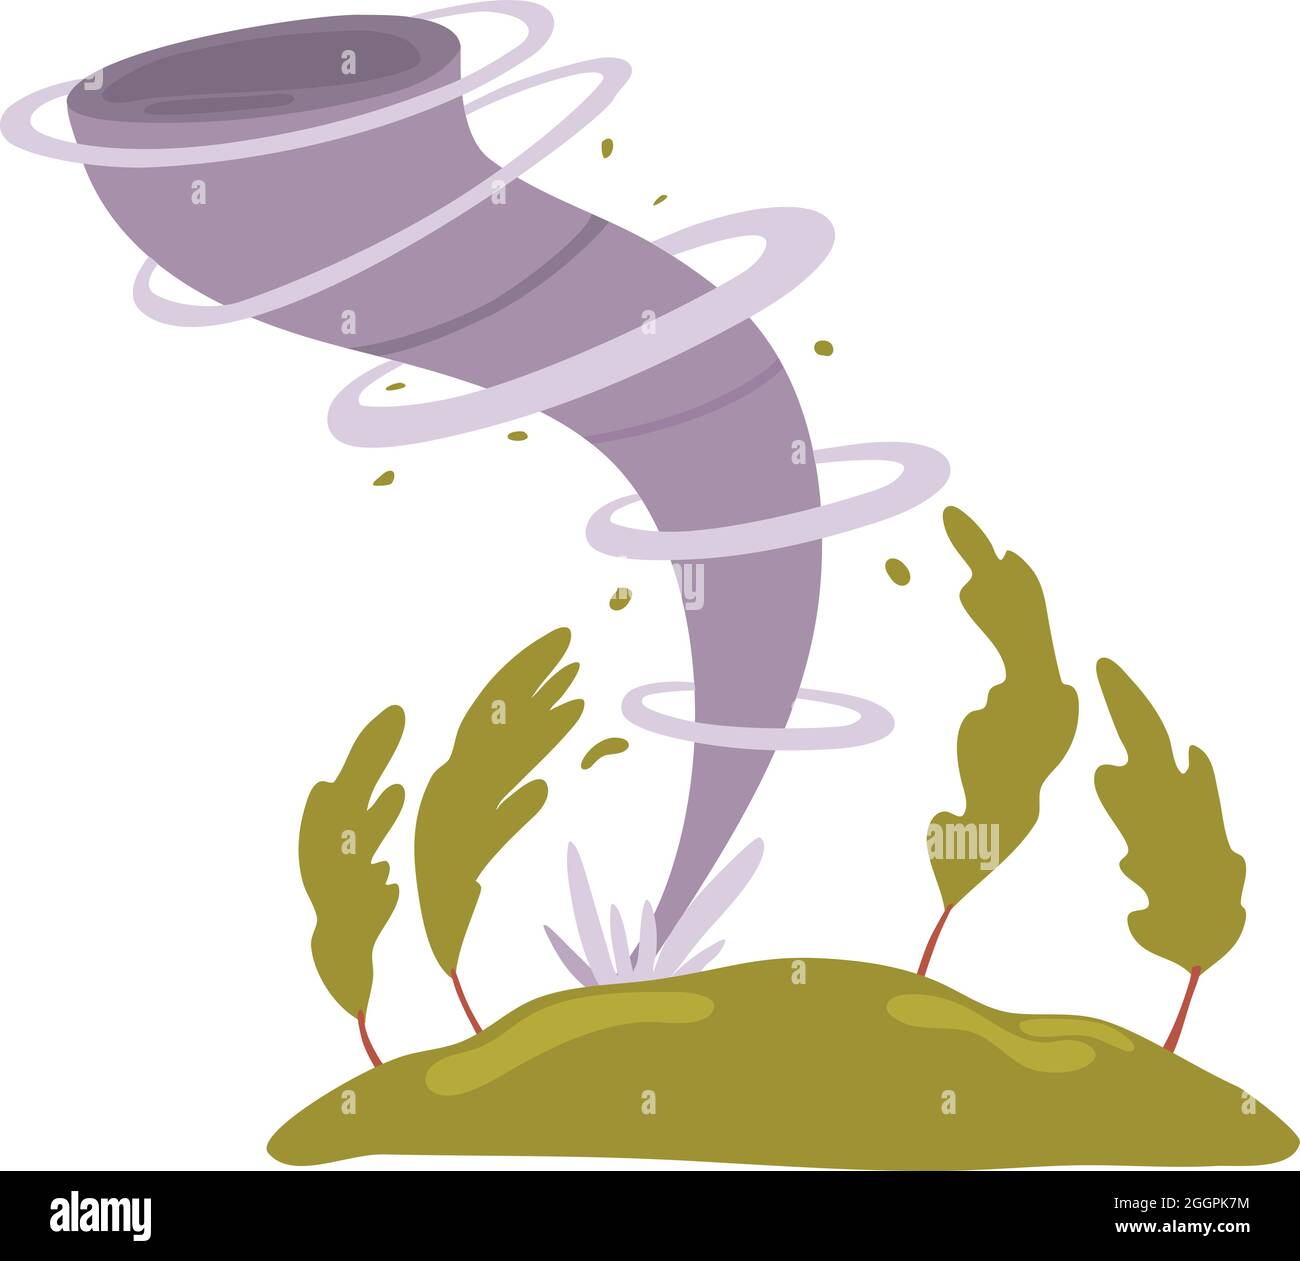 Tornado icon cartoon vector. Storm hurricane Stock Vector